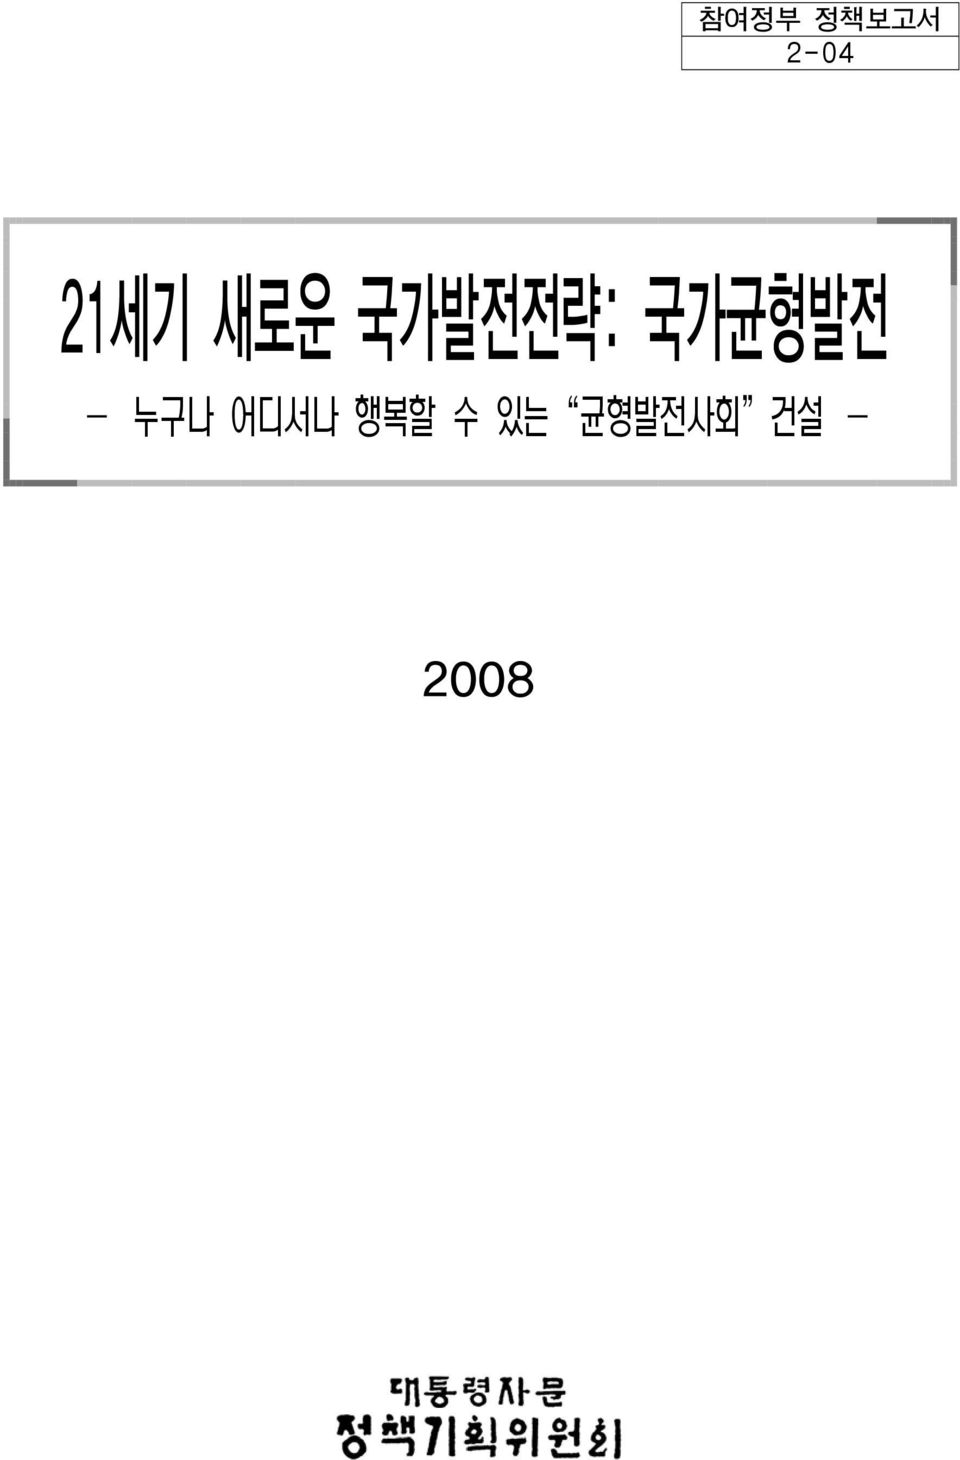 - 2008 작성중인 초안자료 <집필 참여자> 안보전략비서관: 박